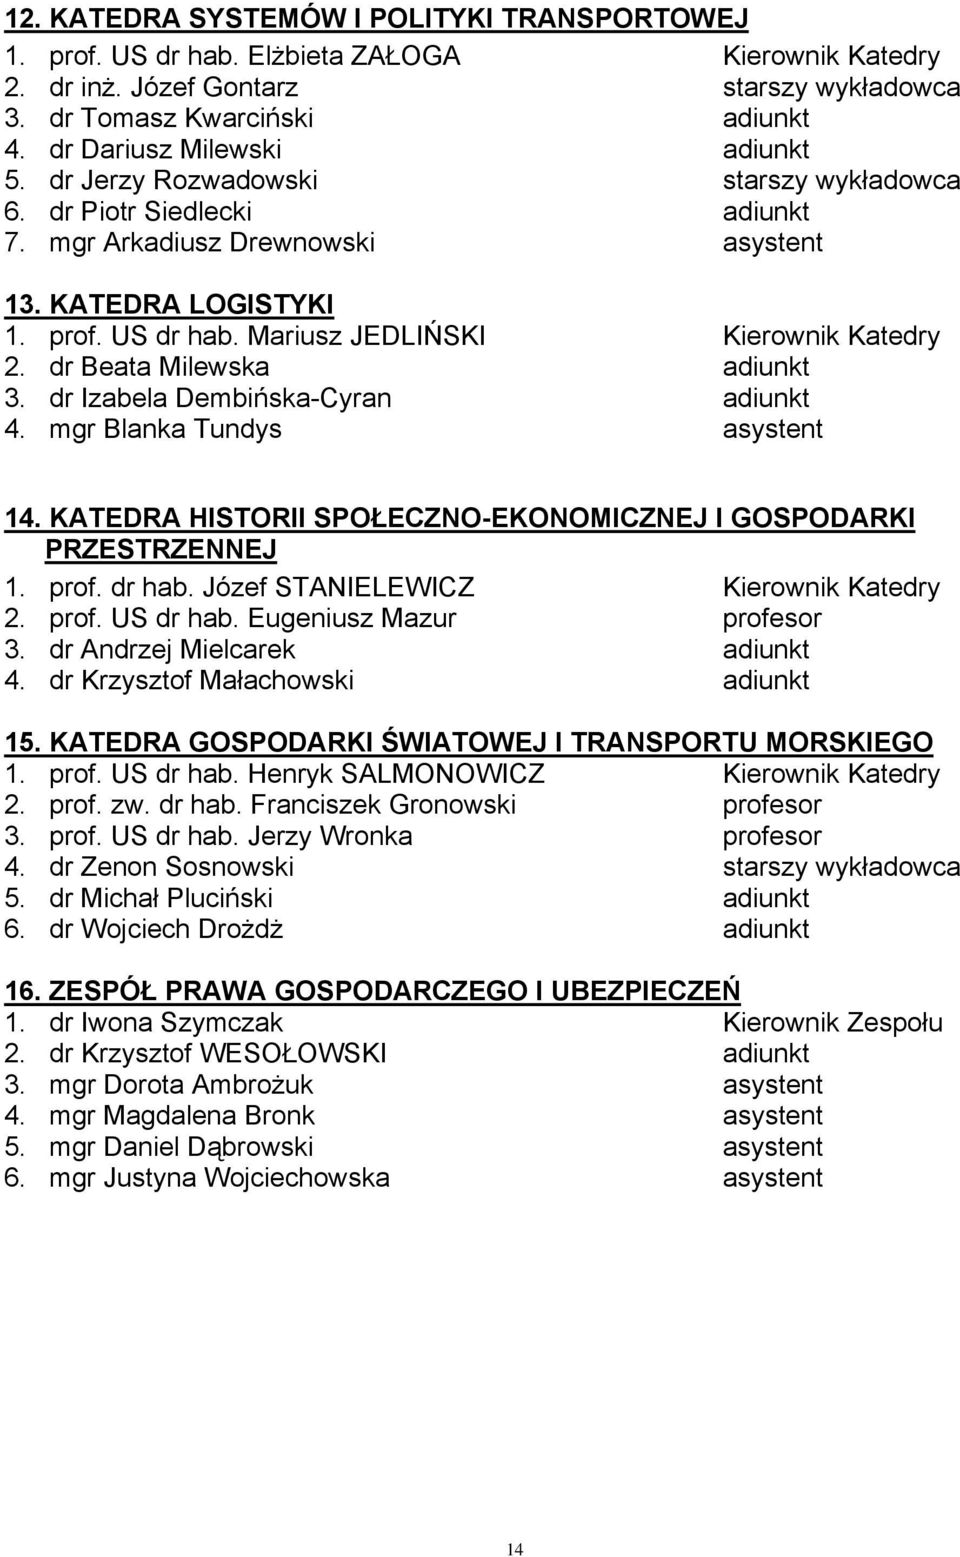 Mariusz JEDLIŃSKI Kierownik Katedry 2. dr Beata Milewska adiunkt 3. dr Izabela Dembińska-Cyran adiunkt 4. mgr Blanka Tundys asystent 14.